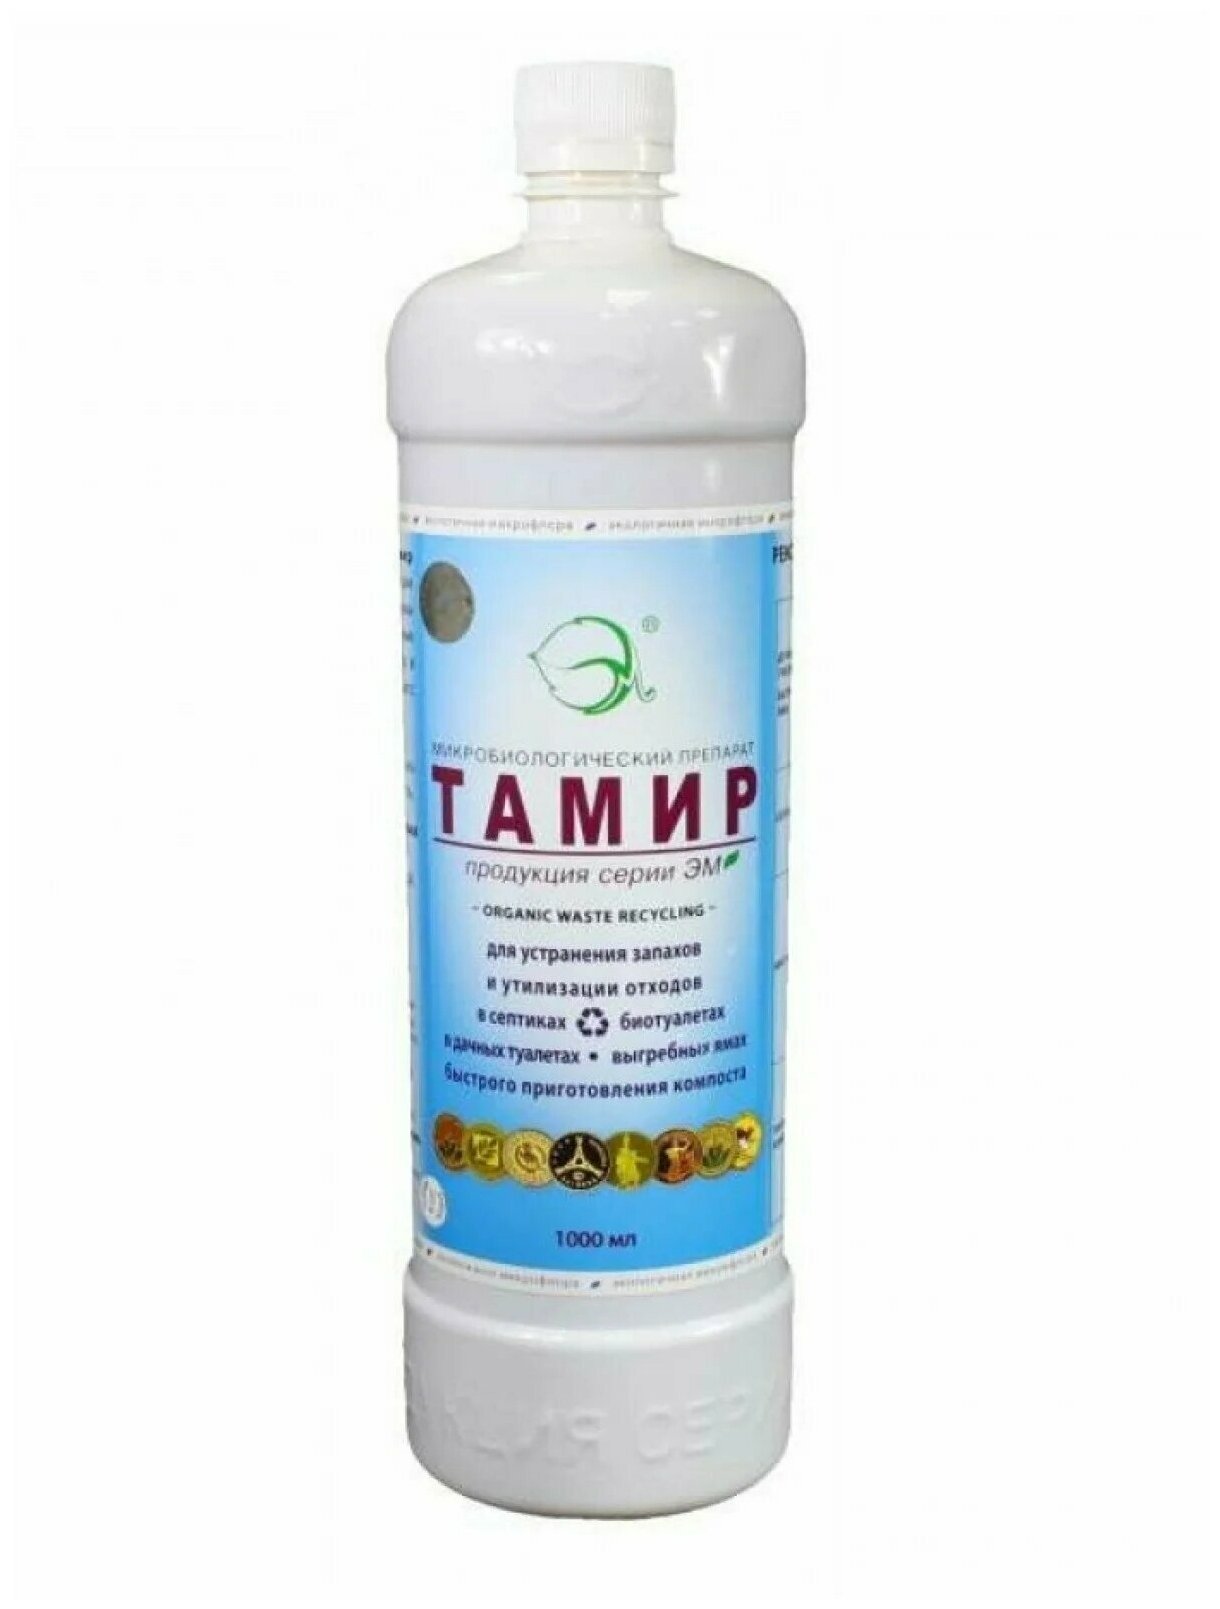 Тамир (серии ЭМ) 1л Биологически активный препарат / ТаМирЭМ - для утилизации отходов